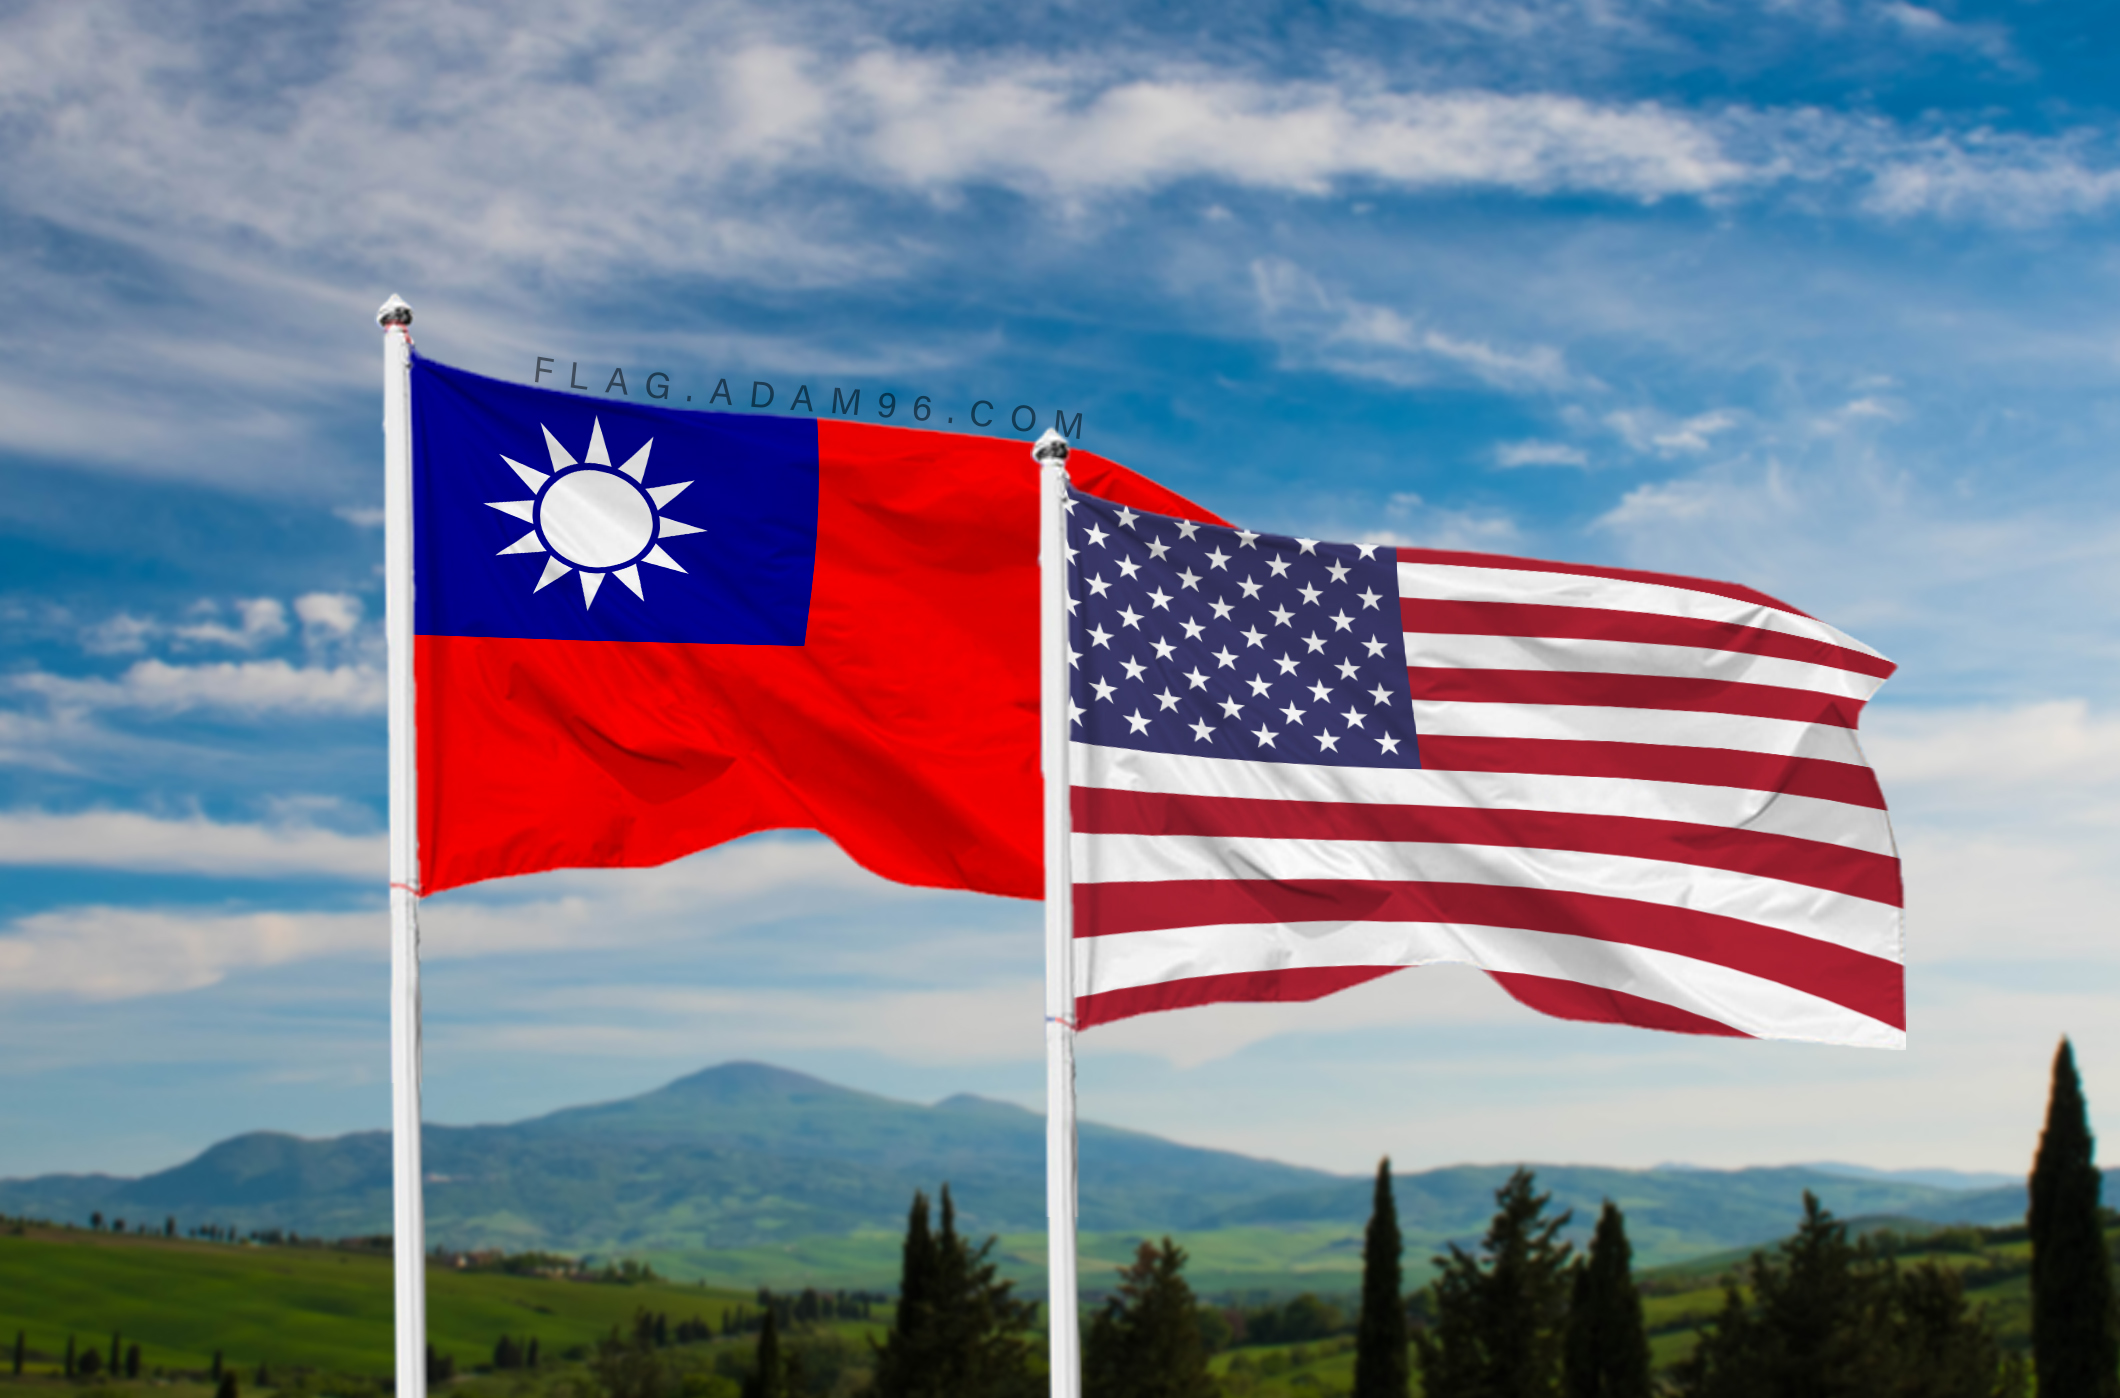 تحميل علم امريكا وتايوان خلفية اعلام العالم بدقة عالية America and Taiwan